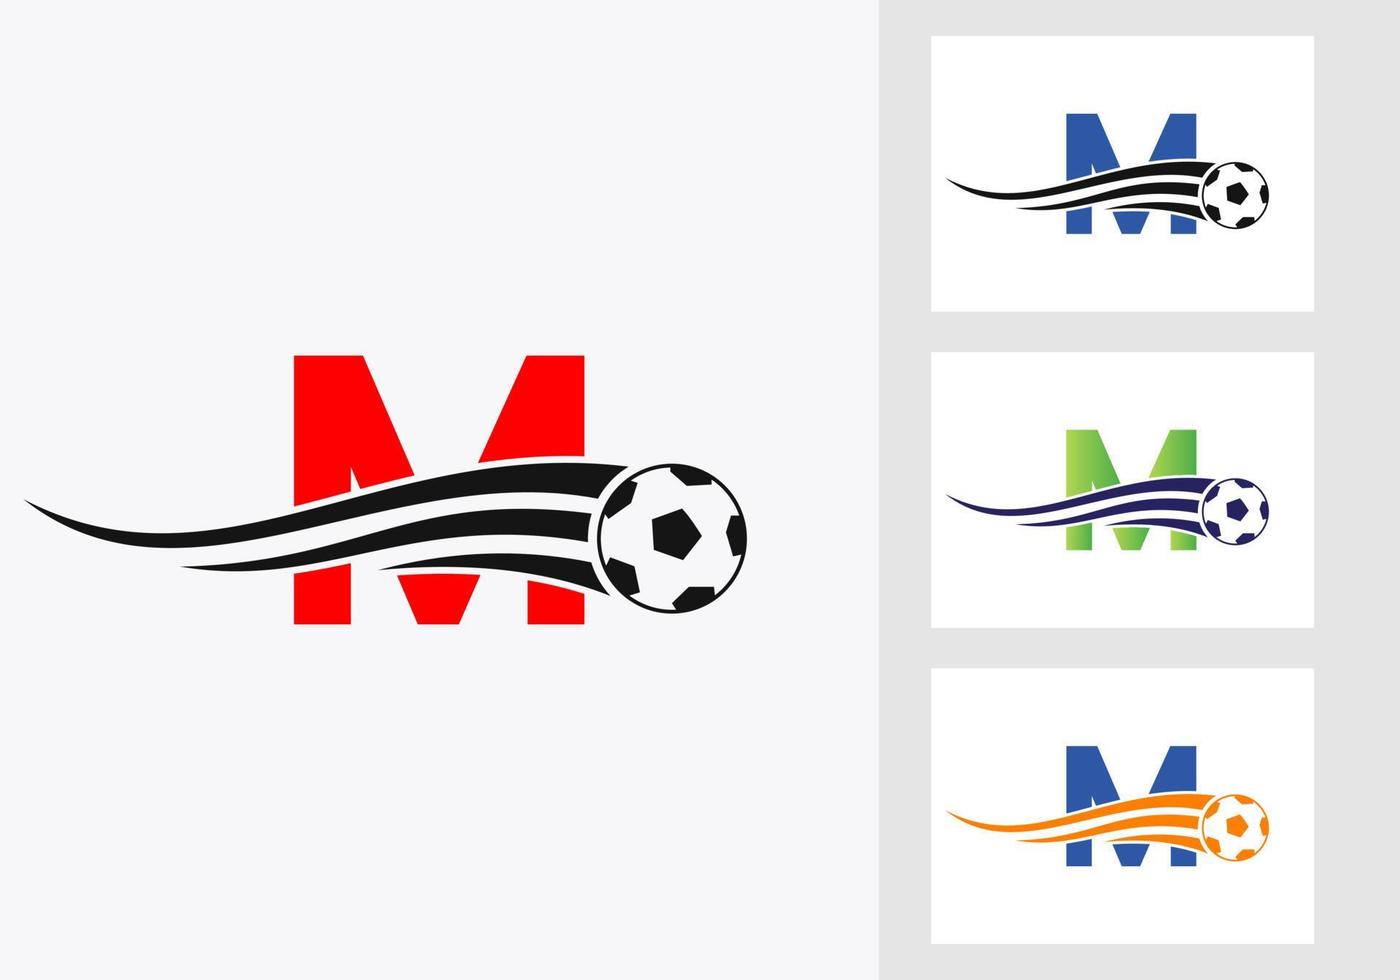 logo de football de football sur le signe de la lettre m. concept d'emblème de club de football d'icône d'équipe de football vecteur